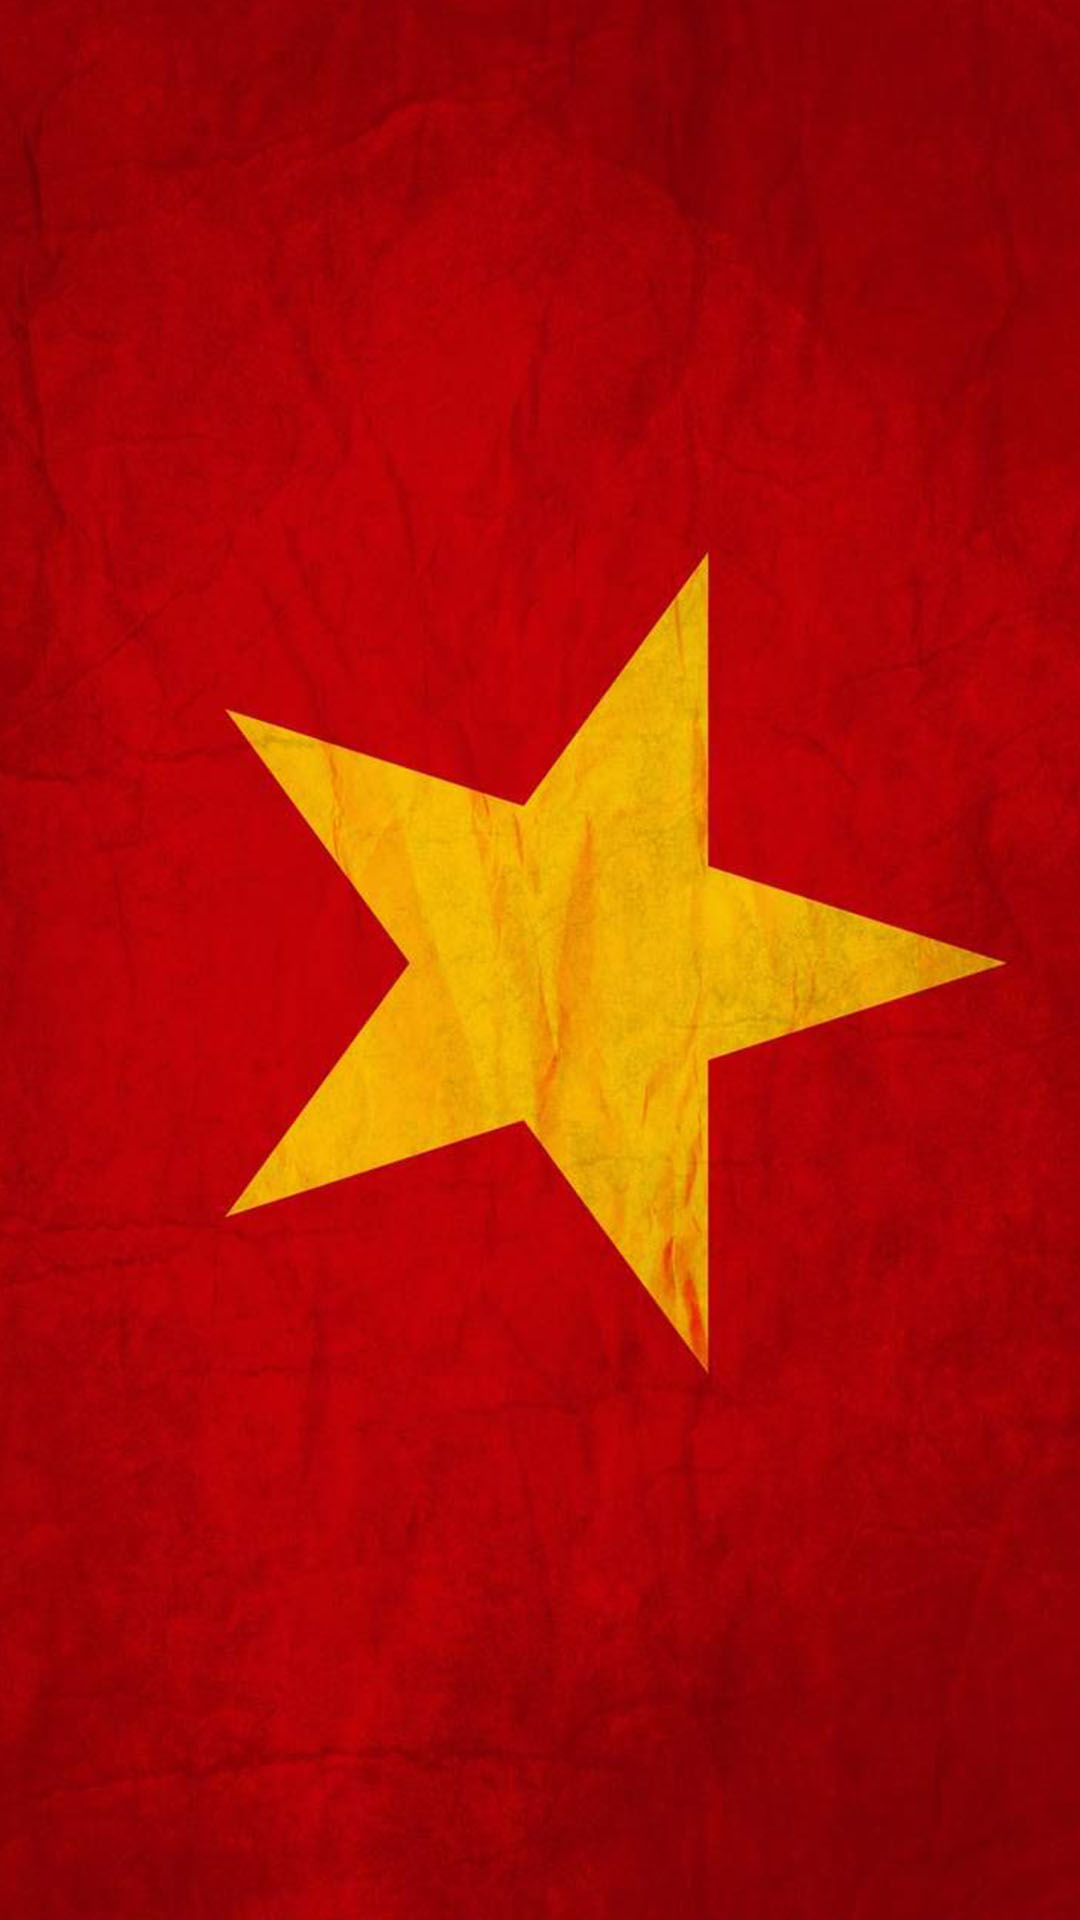 Ý nghĩa cờ đỏ sao vàng - Cờ đỏ sao vàng là biểu tượng của sự tự hào, lòng yêu nước và sự đoàn kết. Trên áo quốc kỳ, những ngôi sao lấp lánh bao quanh chiếc cờ đỏ đại diện cho 54 dân tộc đoàn kết với nhau. Điều đó cho thấy tình yêu và niềm tự hào của mỗi người dân Việt Nam dành cho quê hương của mình.